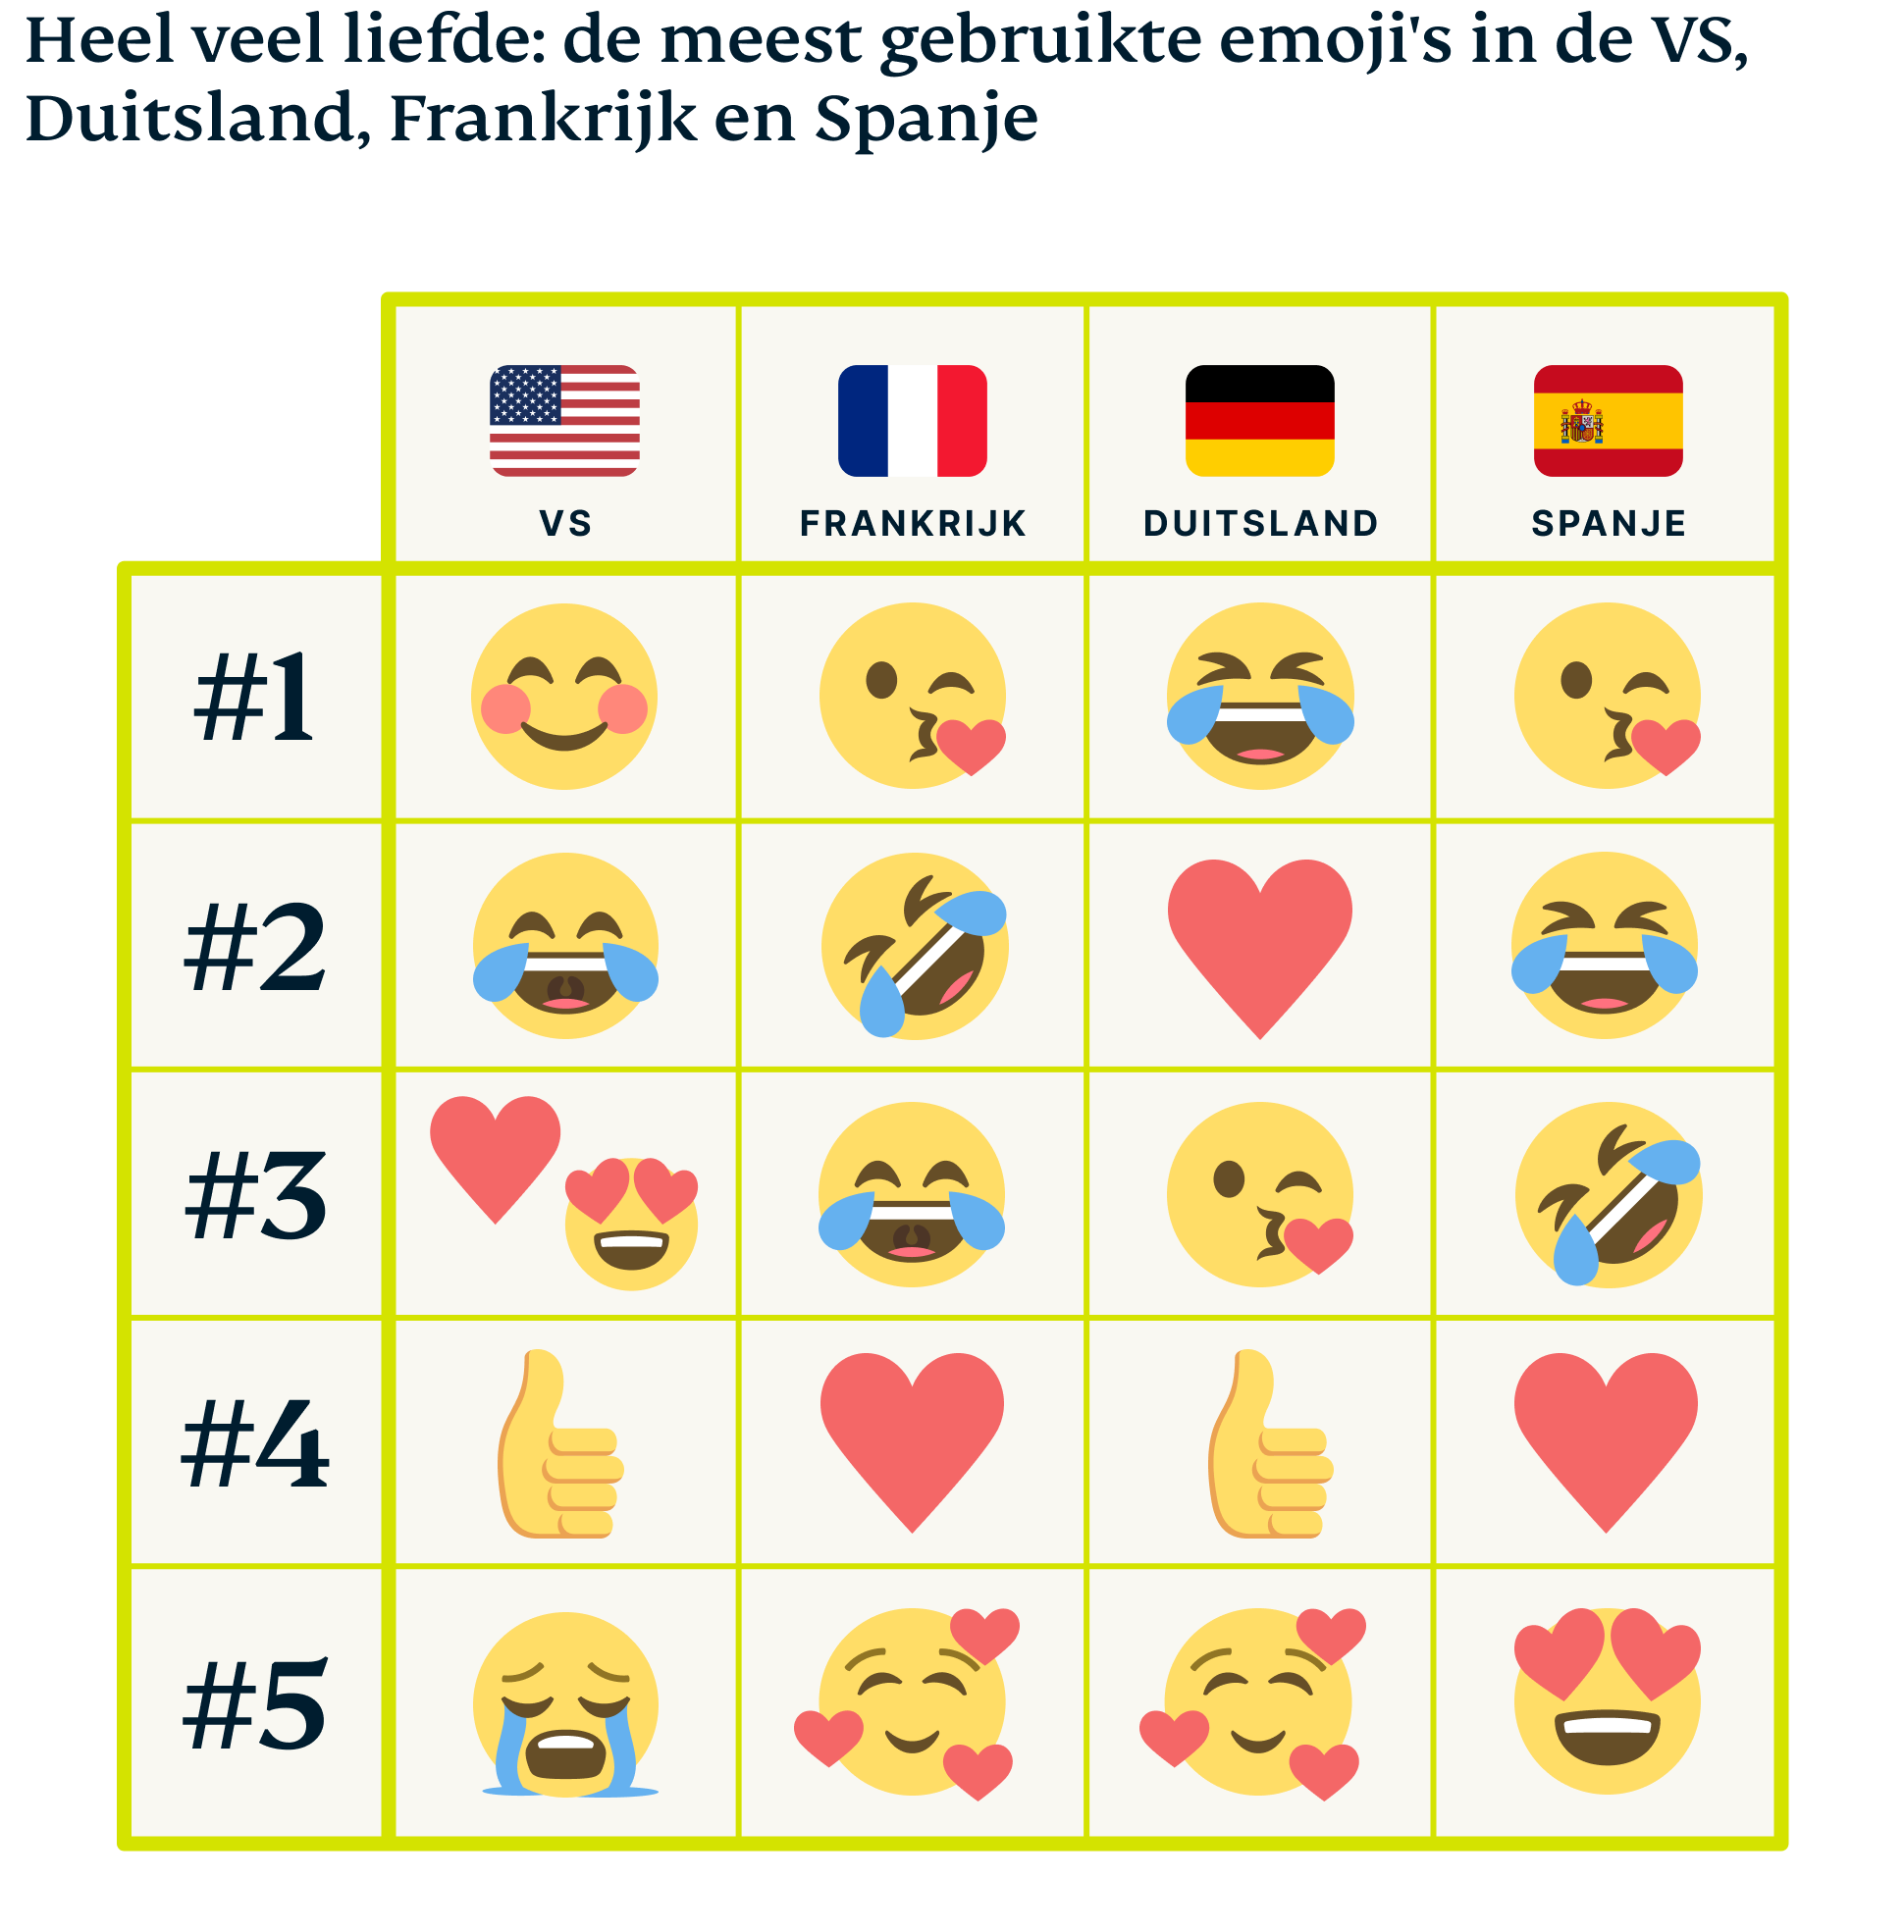 Meest gebruikte emoji's in de VS, Spanje, Duitsland en Frankrijk